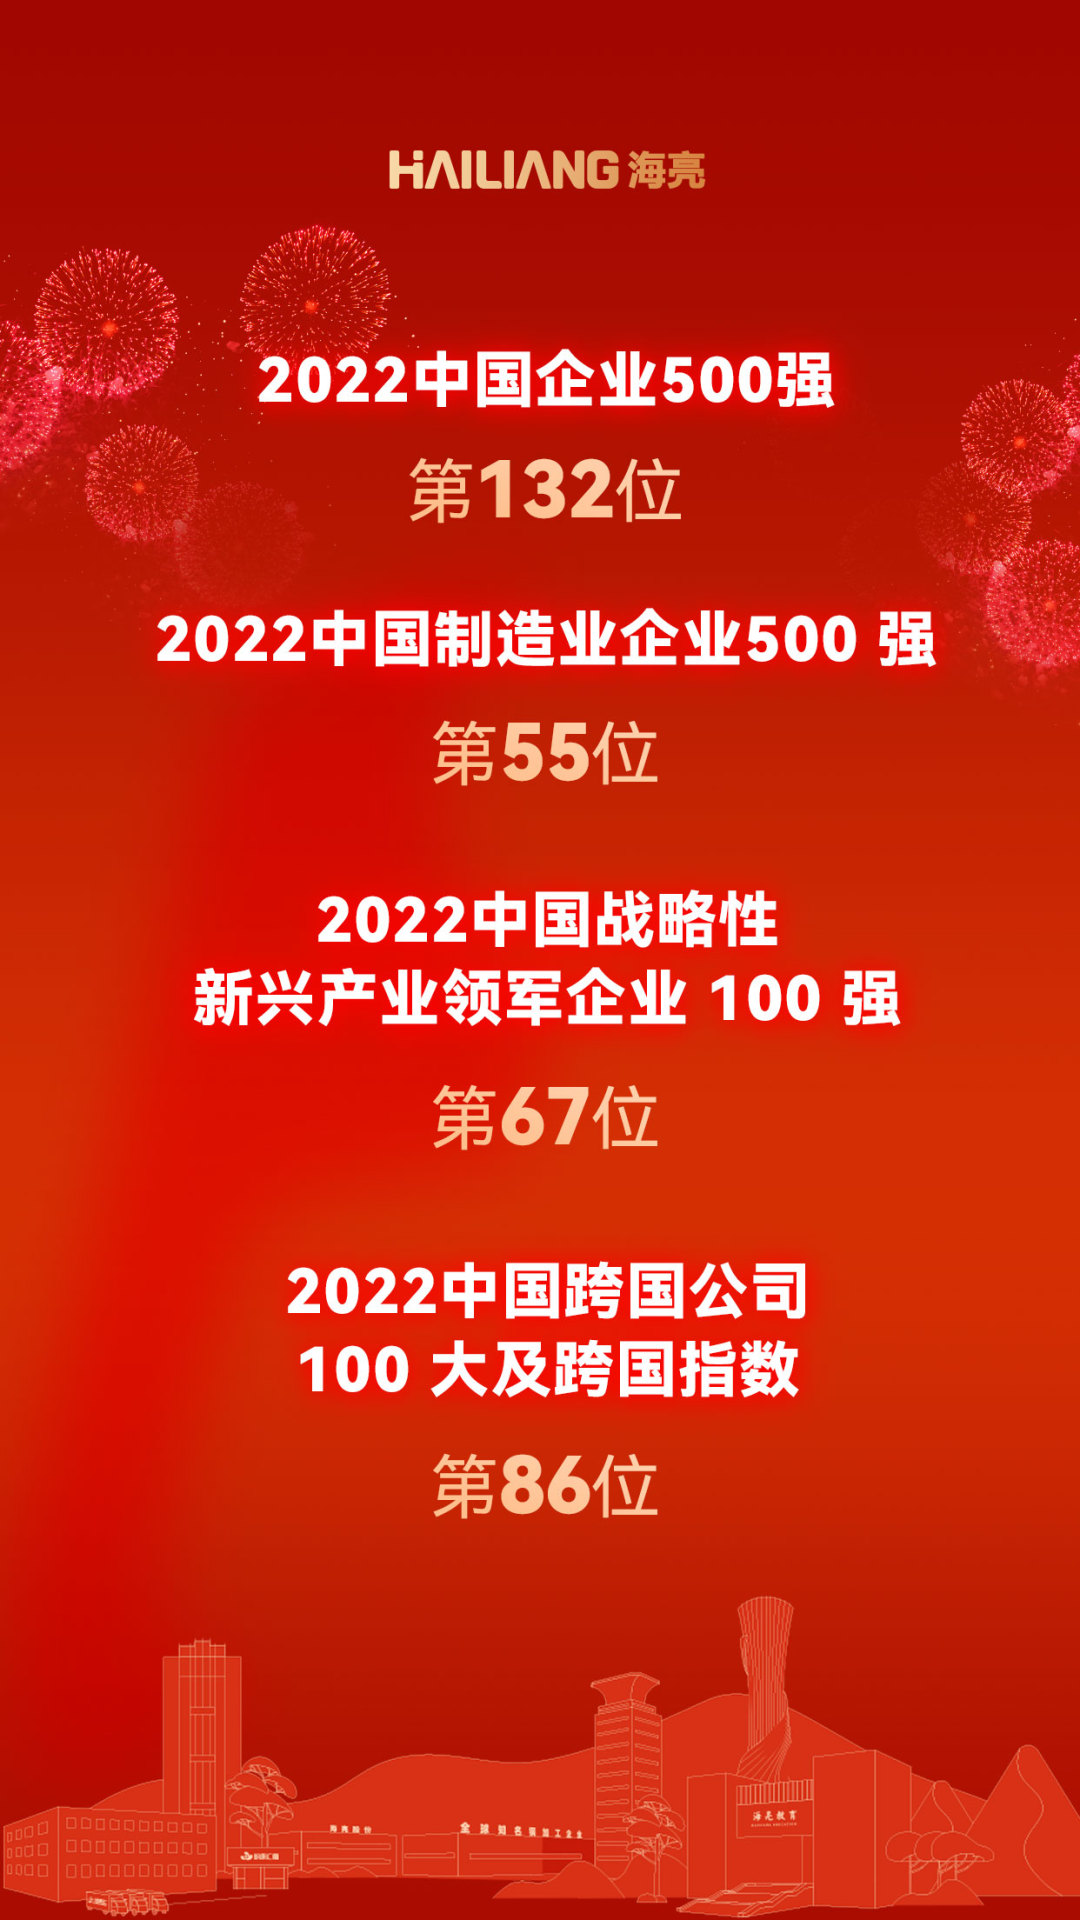 2022中國企業500強榜單發布 海亮集團連續19年入榜